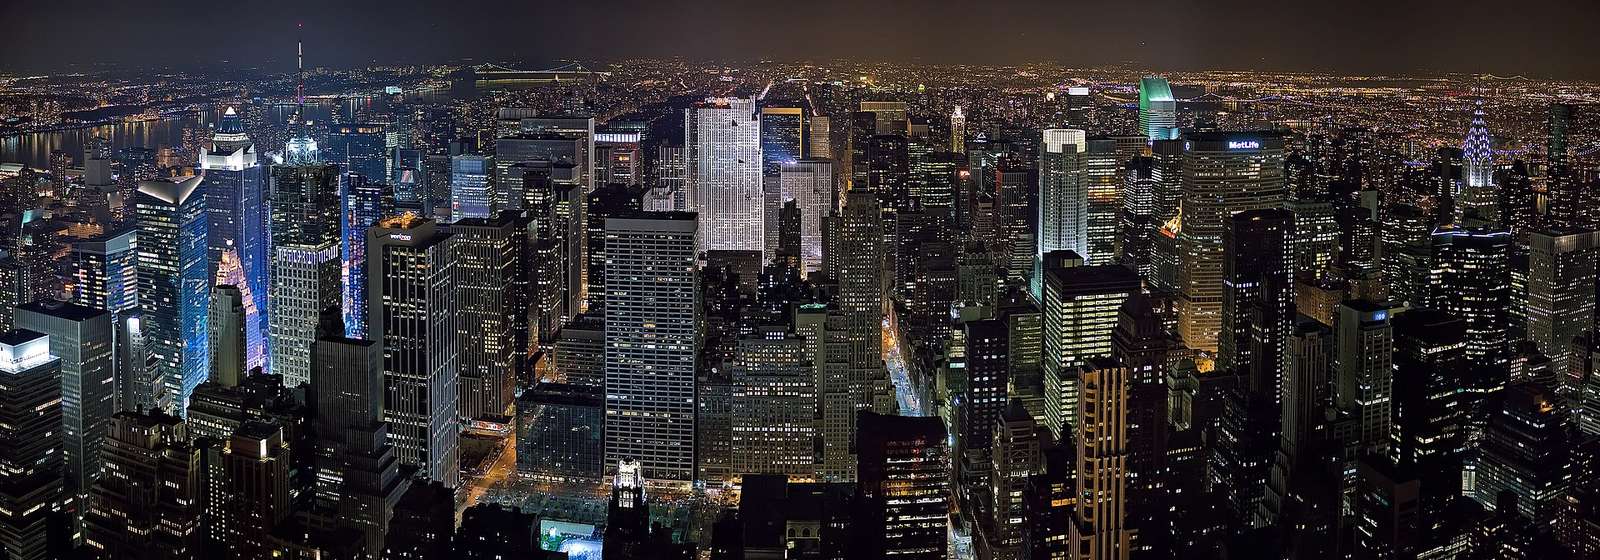 Ню Йорк през нощта онлайн пъзел